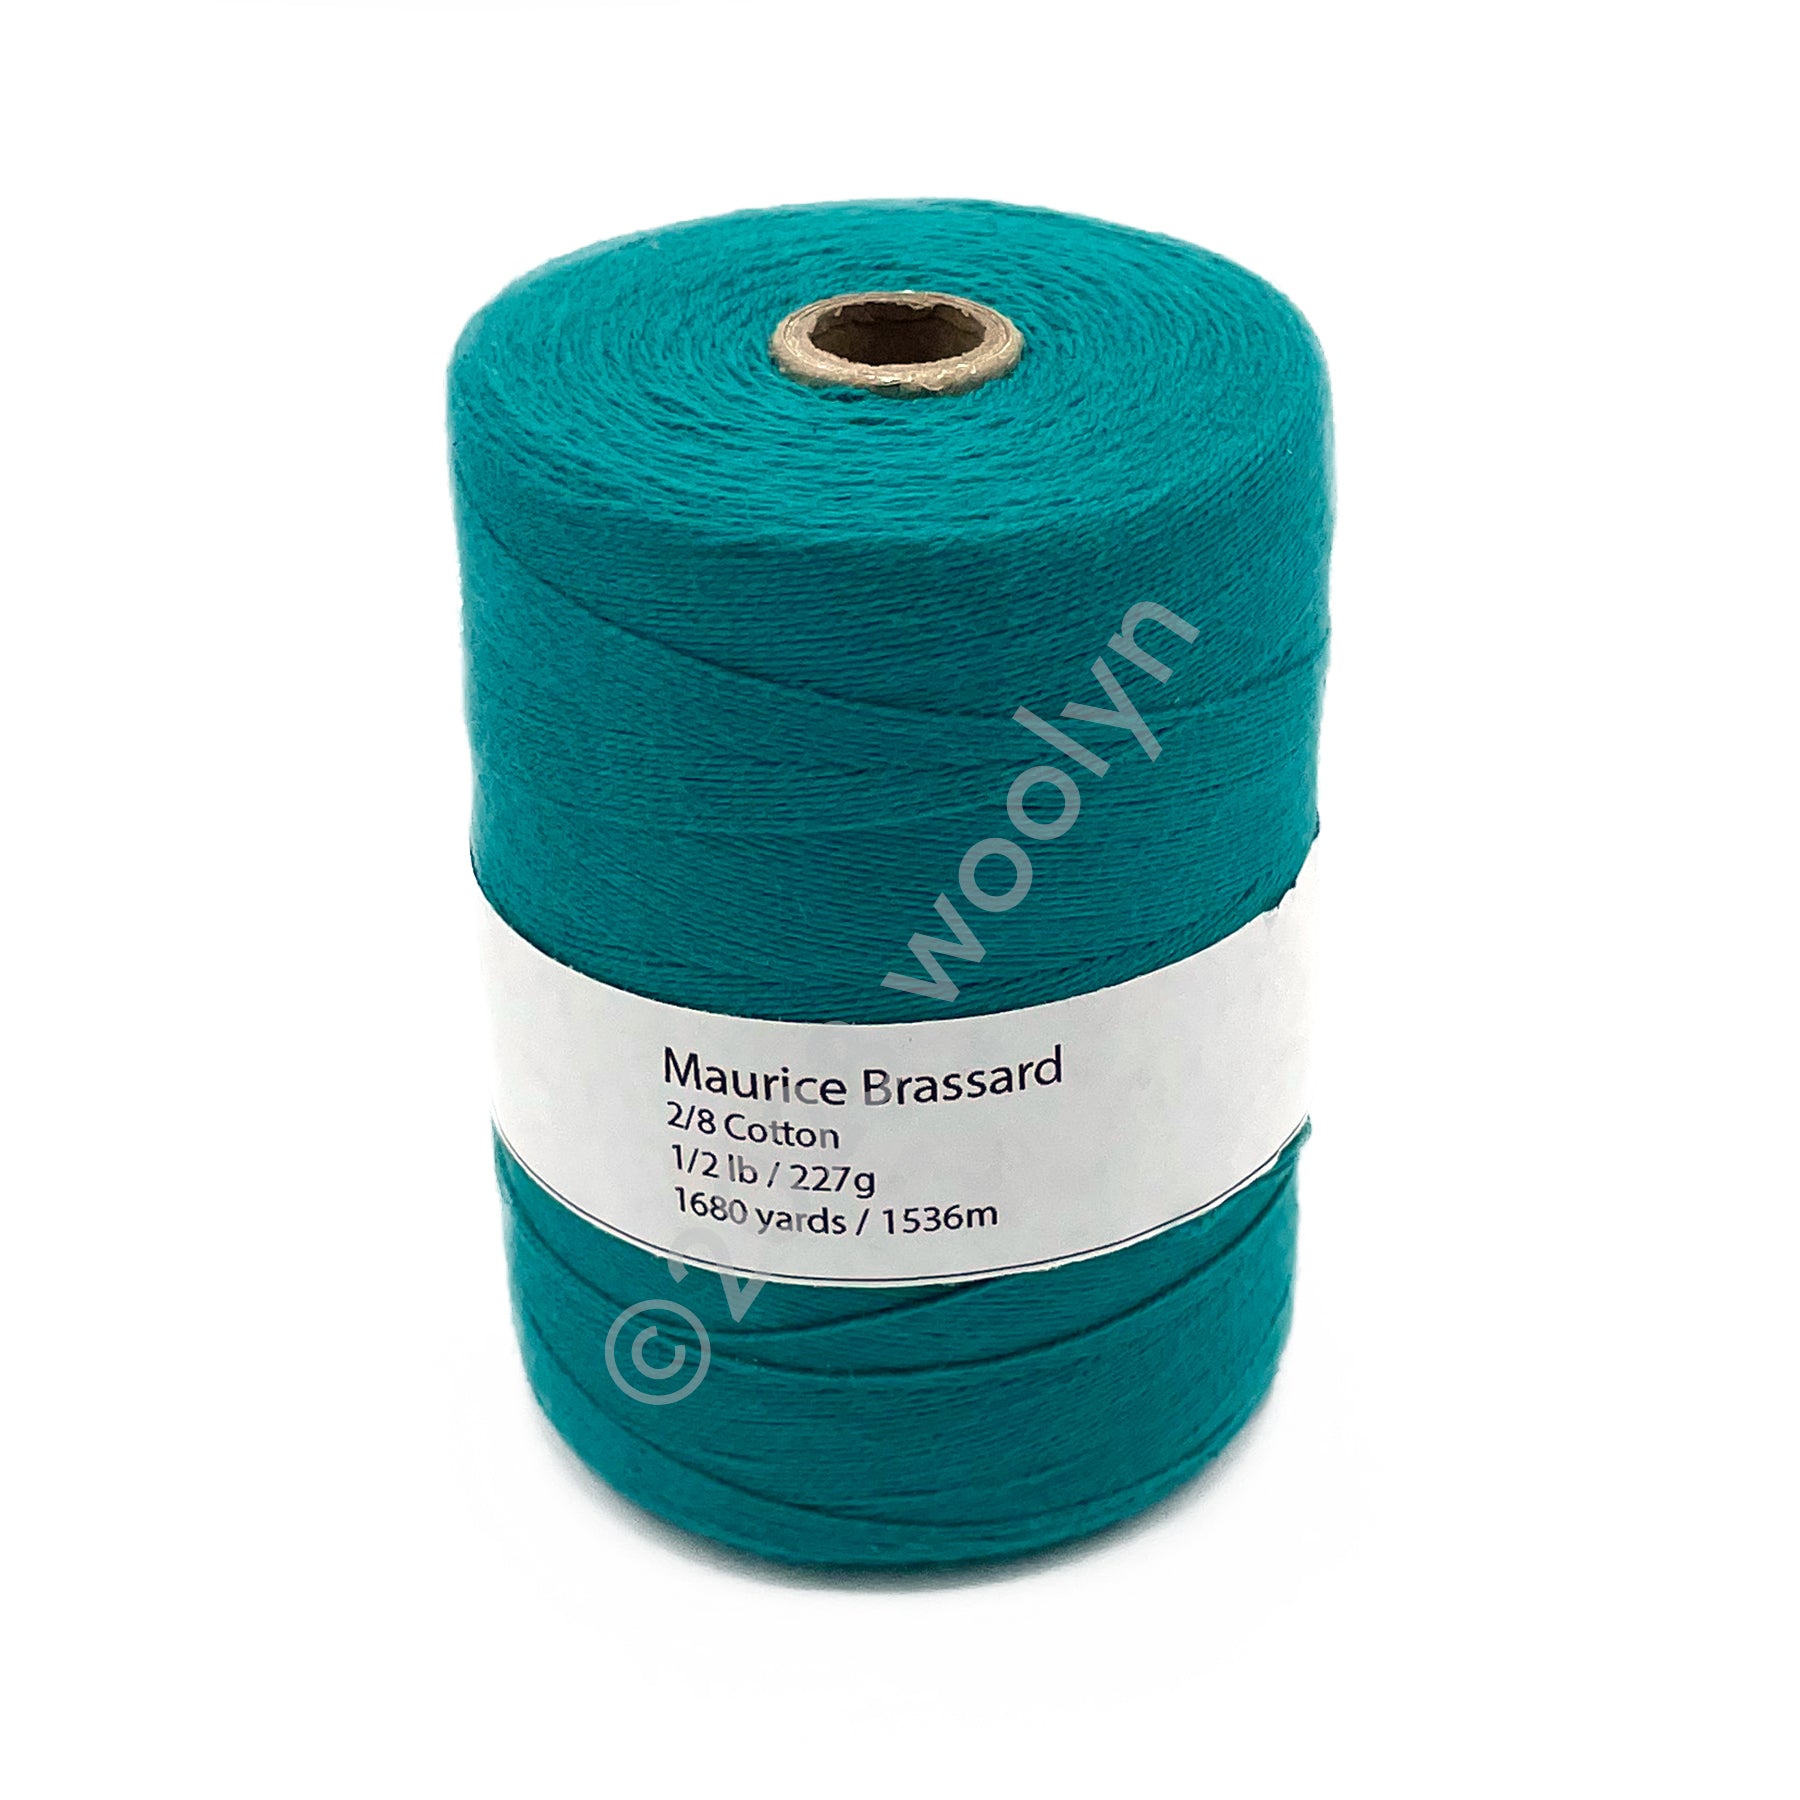 8/4 Un-Mercerized Cotton Weaving Yarn ~ Natural - Gist Yarn